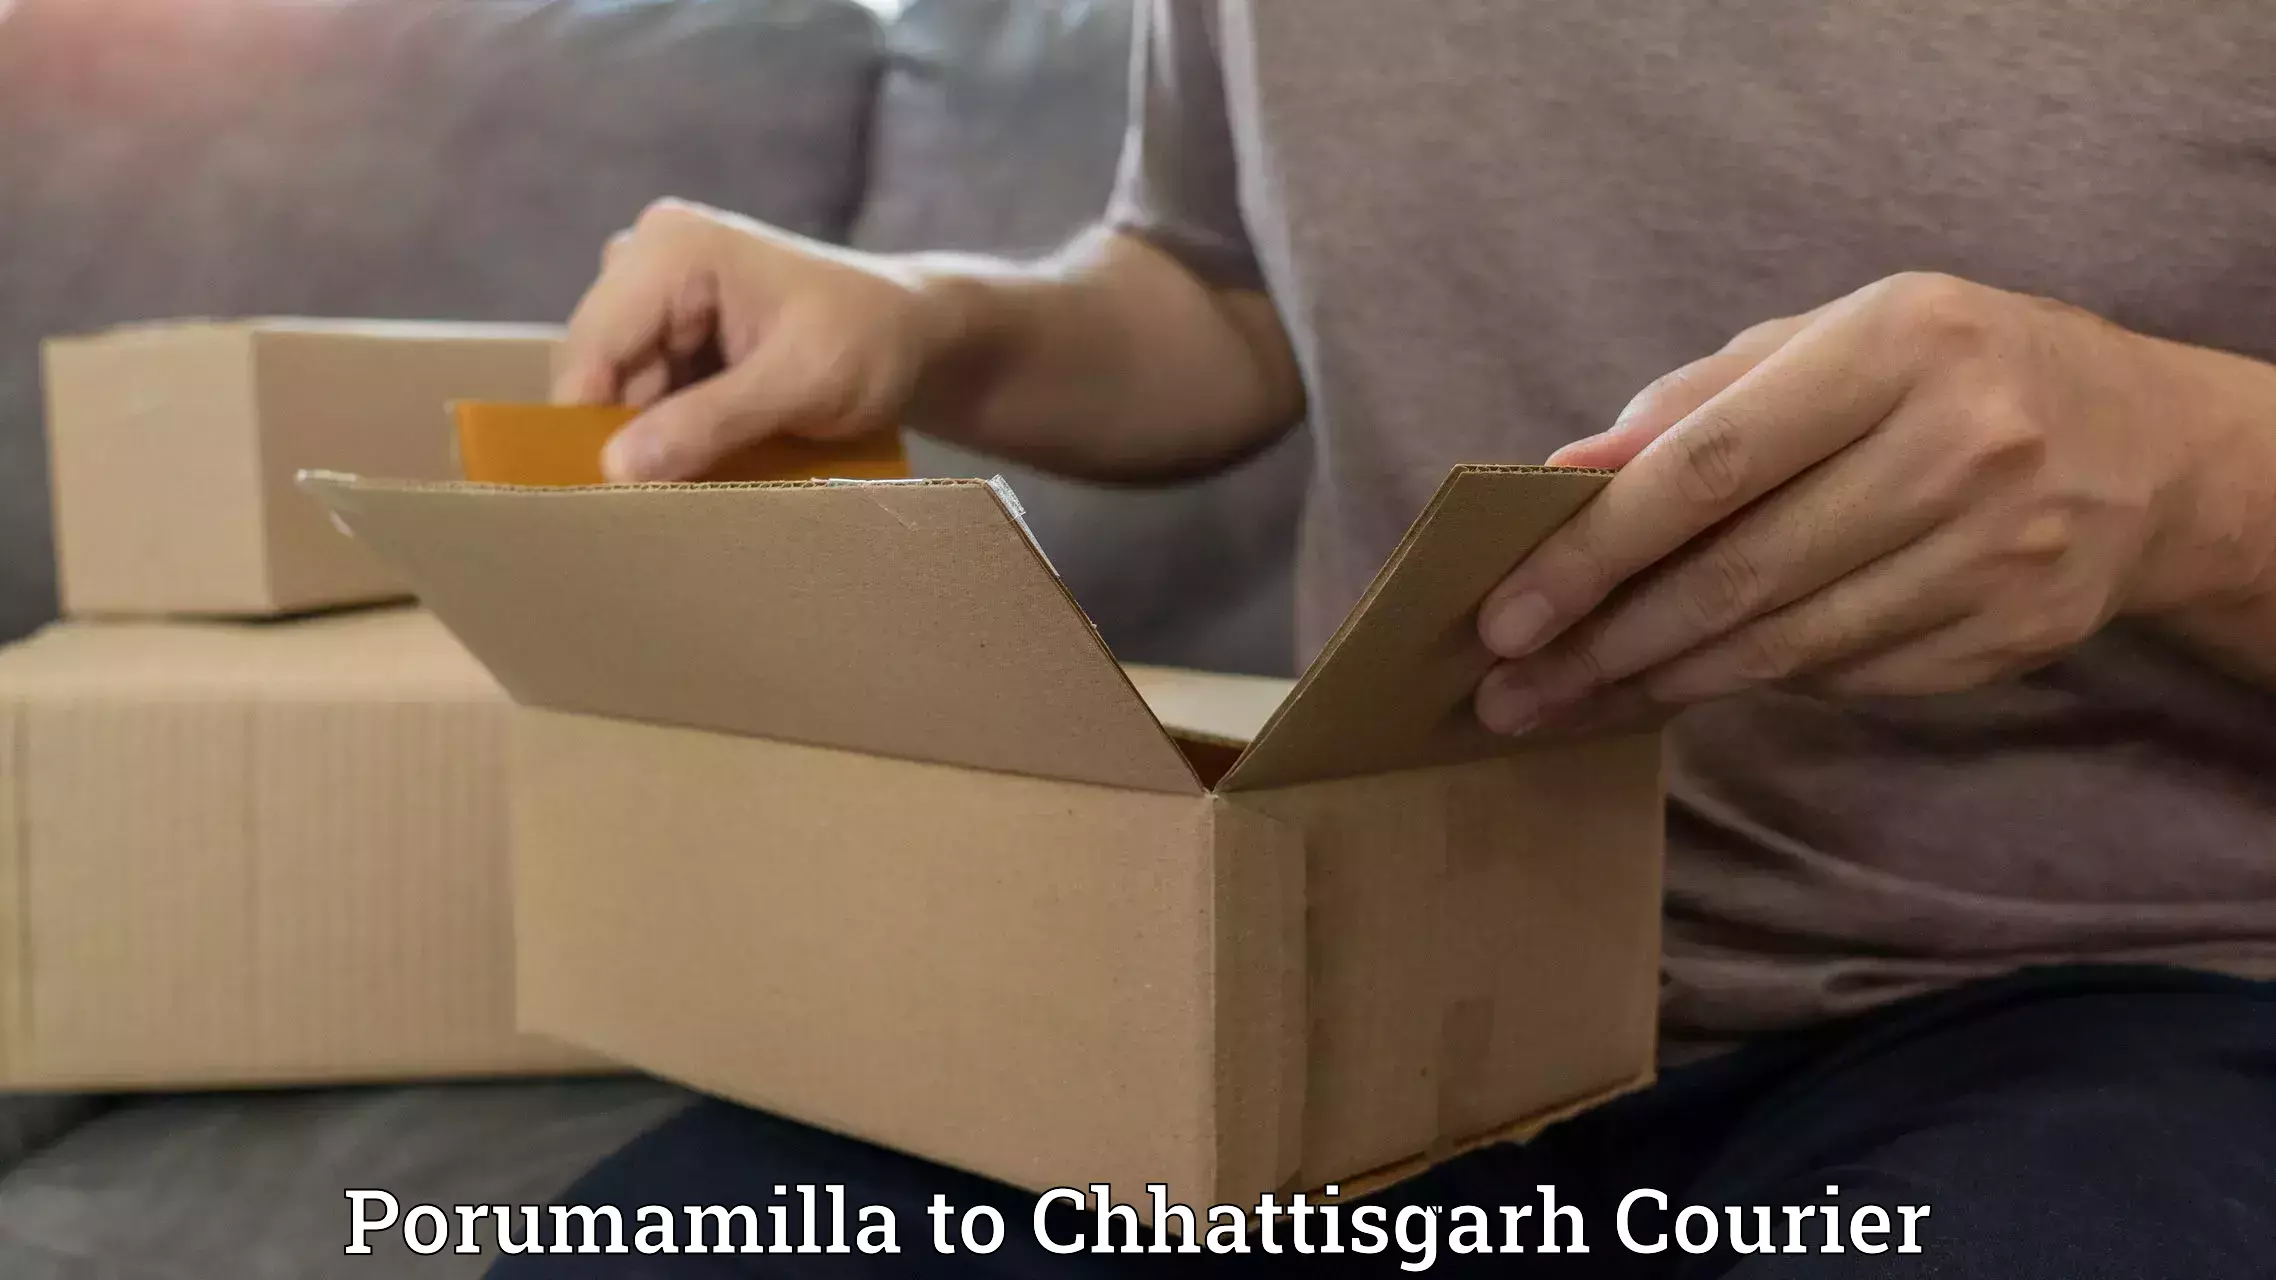 Courier service comparison in Porumamilla to Sarangarh